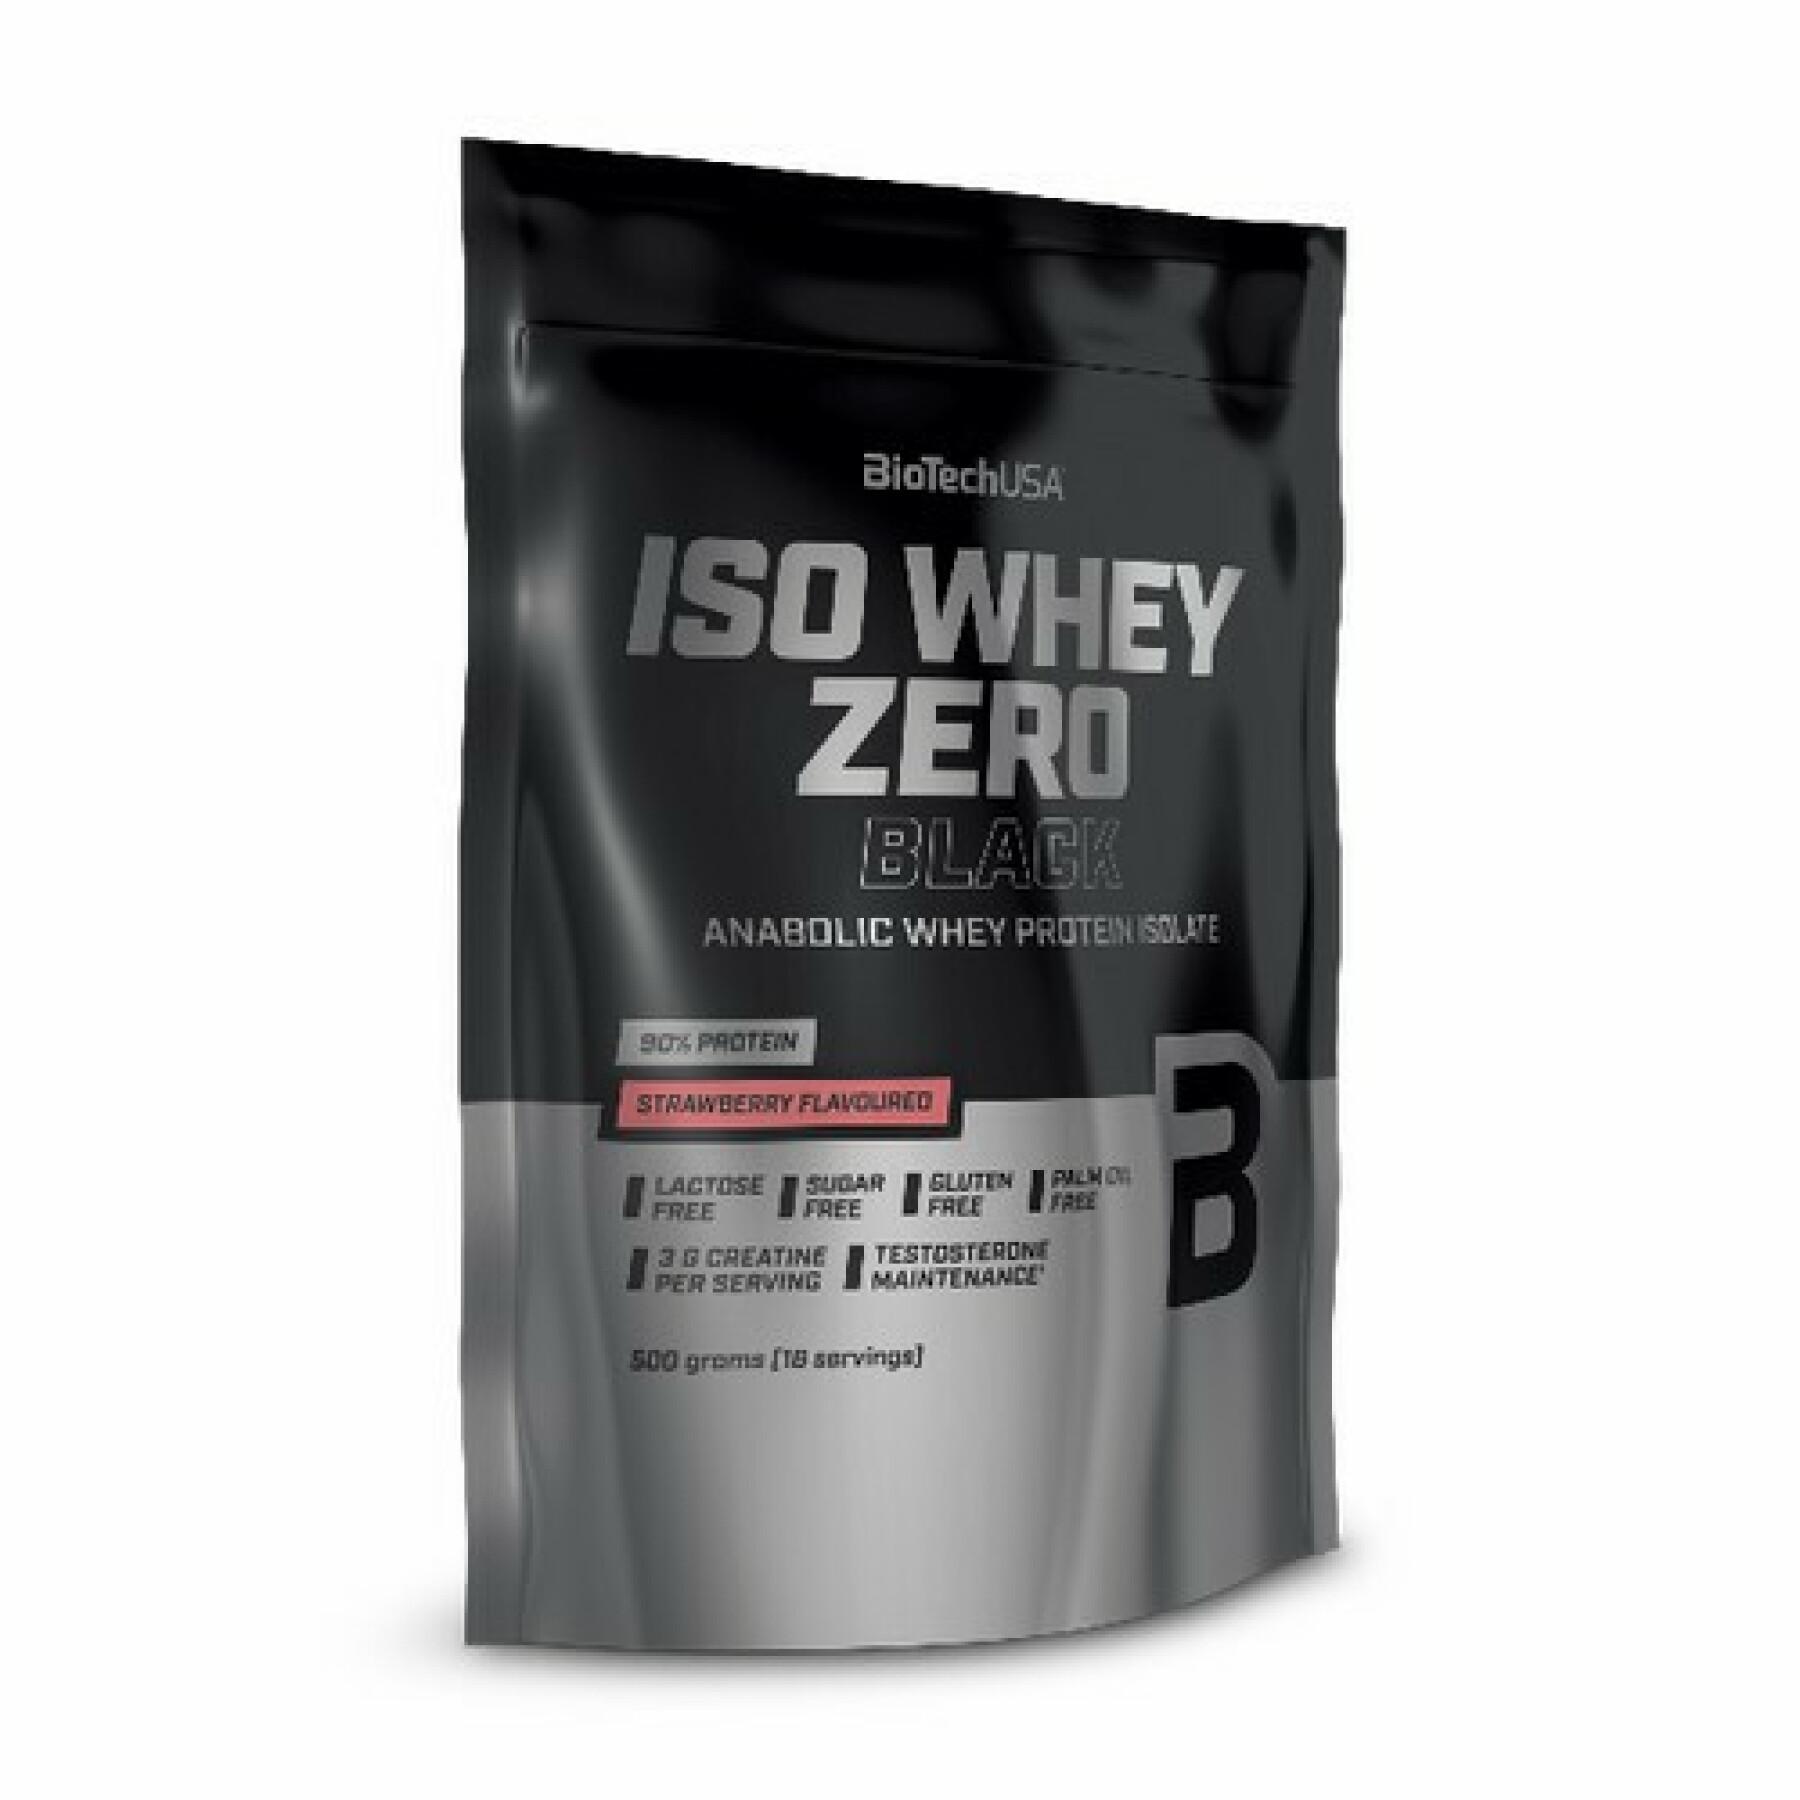 10er Pack Proteinbeutel Biotech USA iso whey zero - Erdbeere - 500g